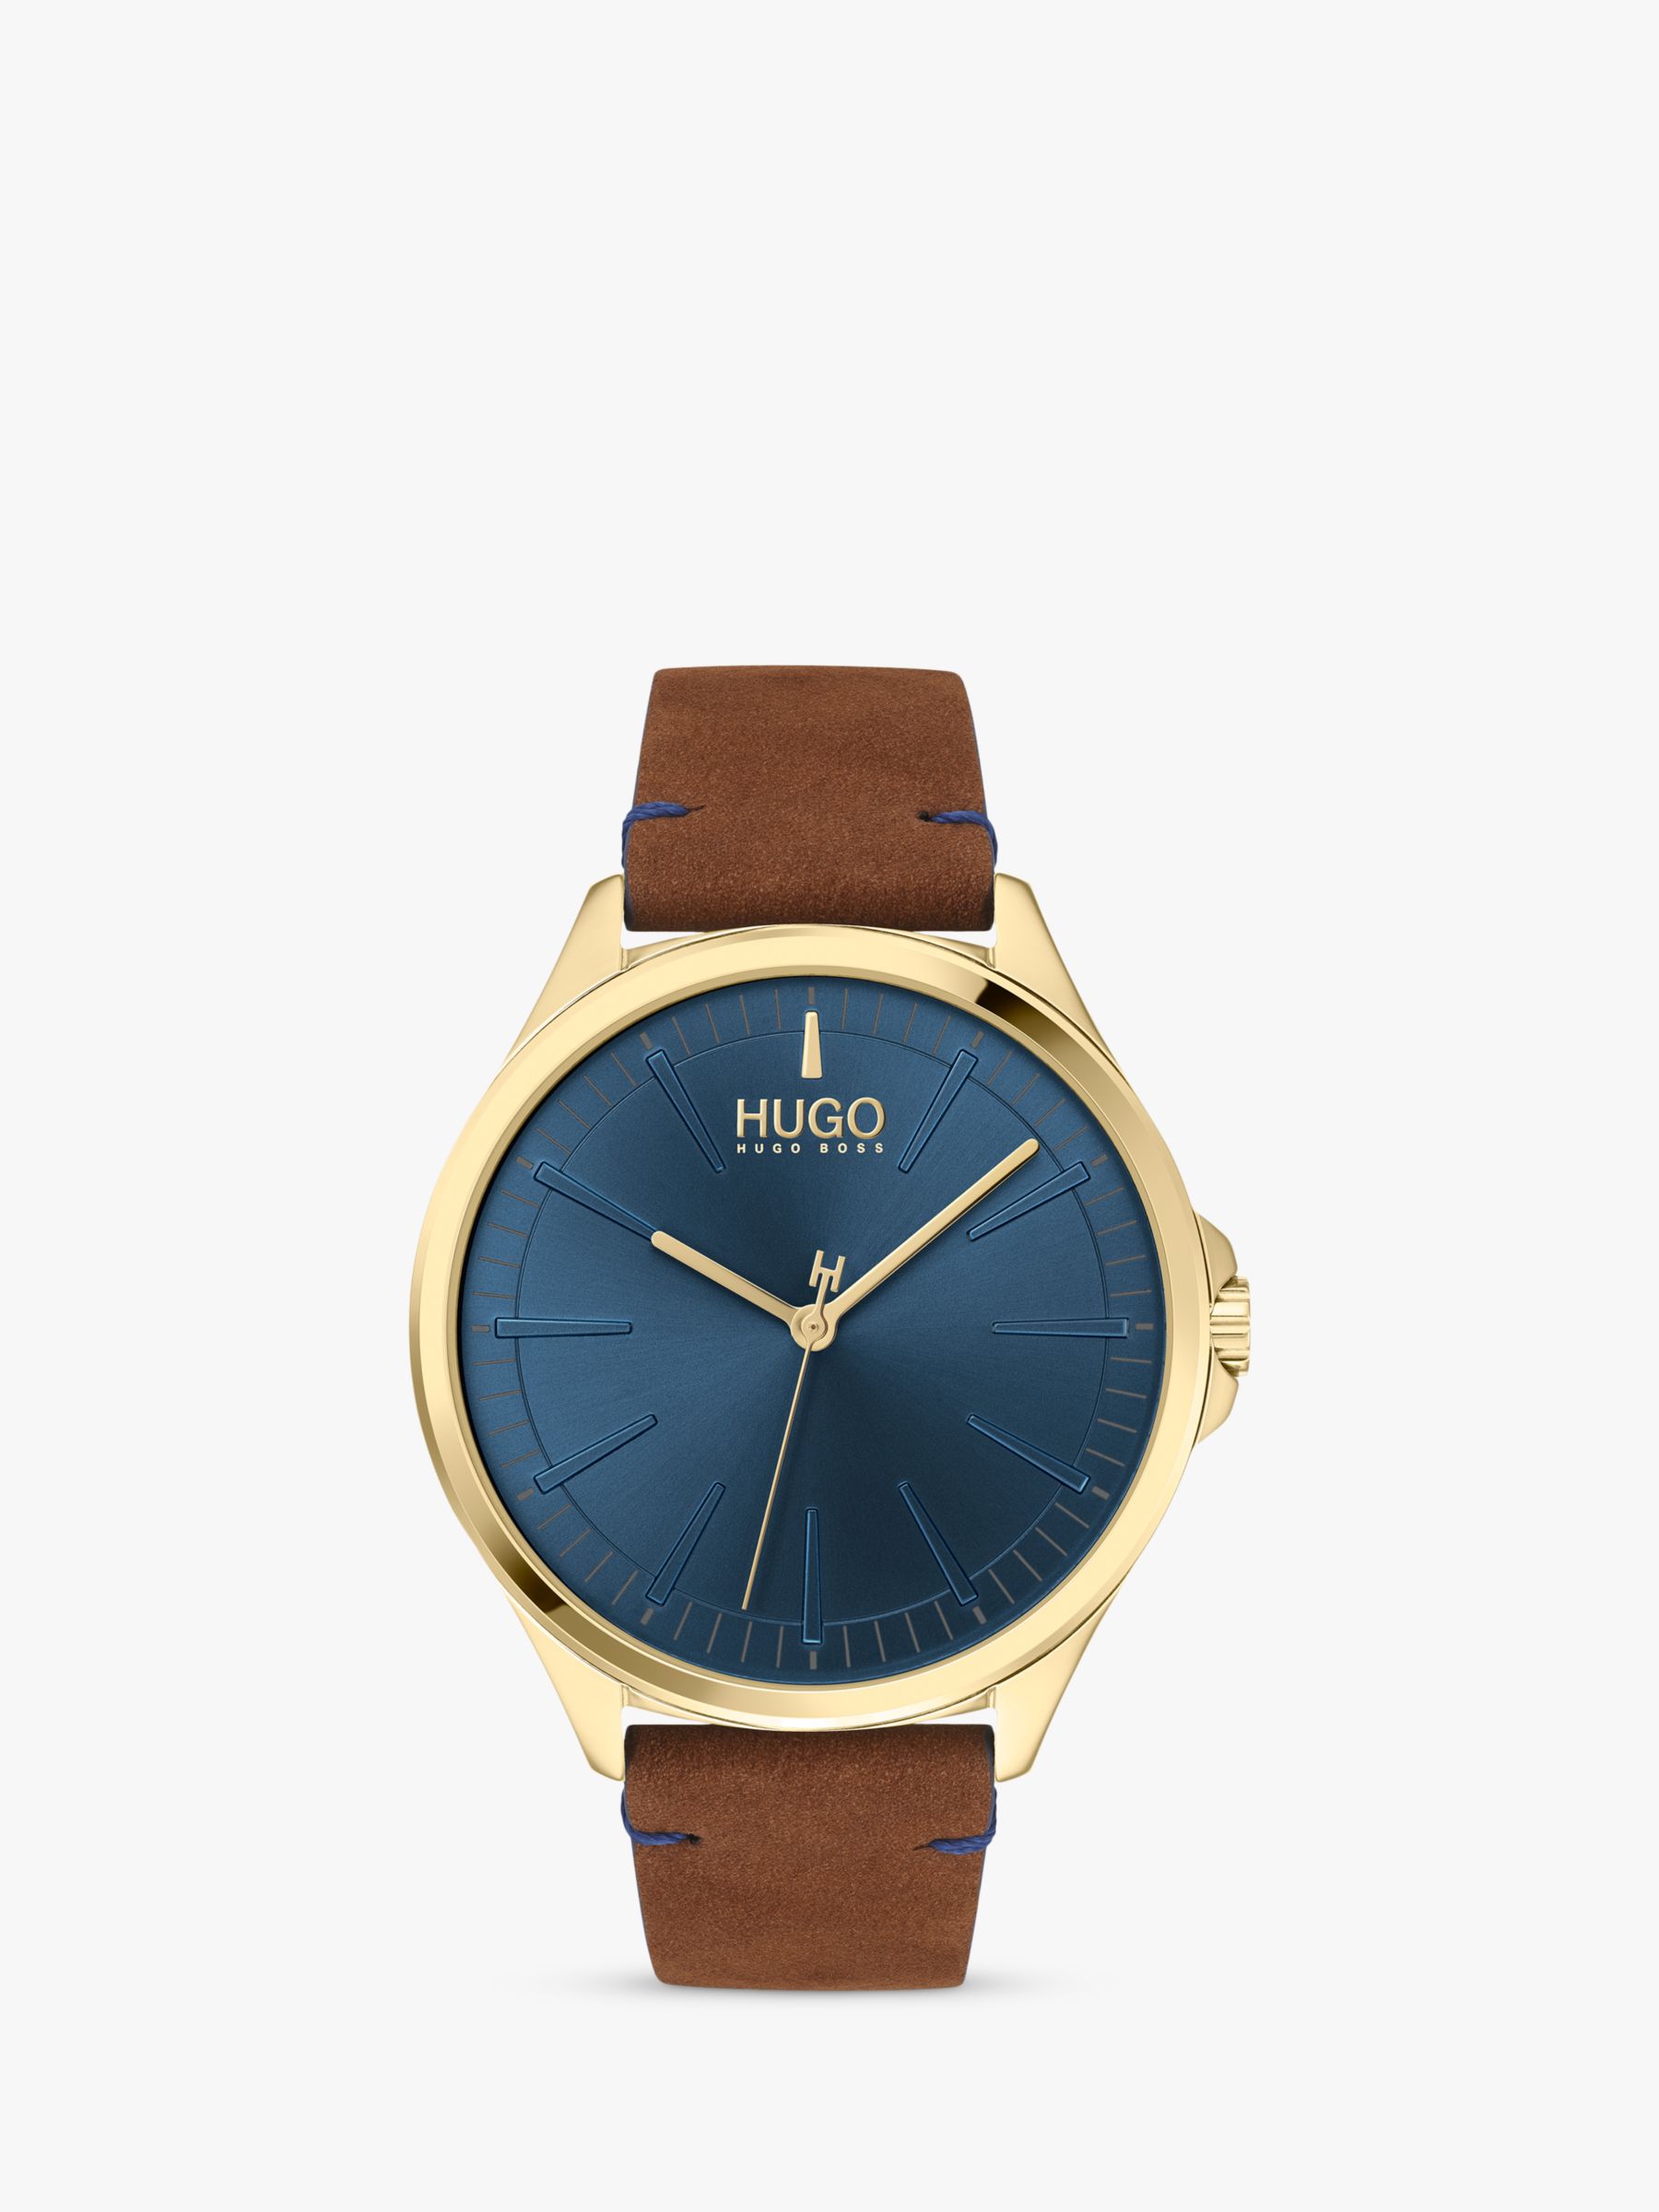 HUGO 1530134 Men's SMASH Leather Strap Watch, Tan/Blue at John Lewis ...